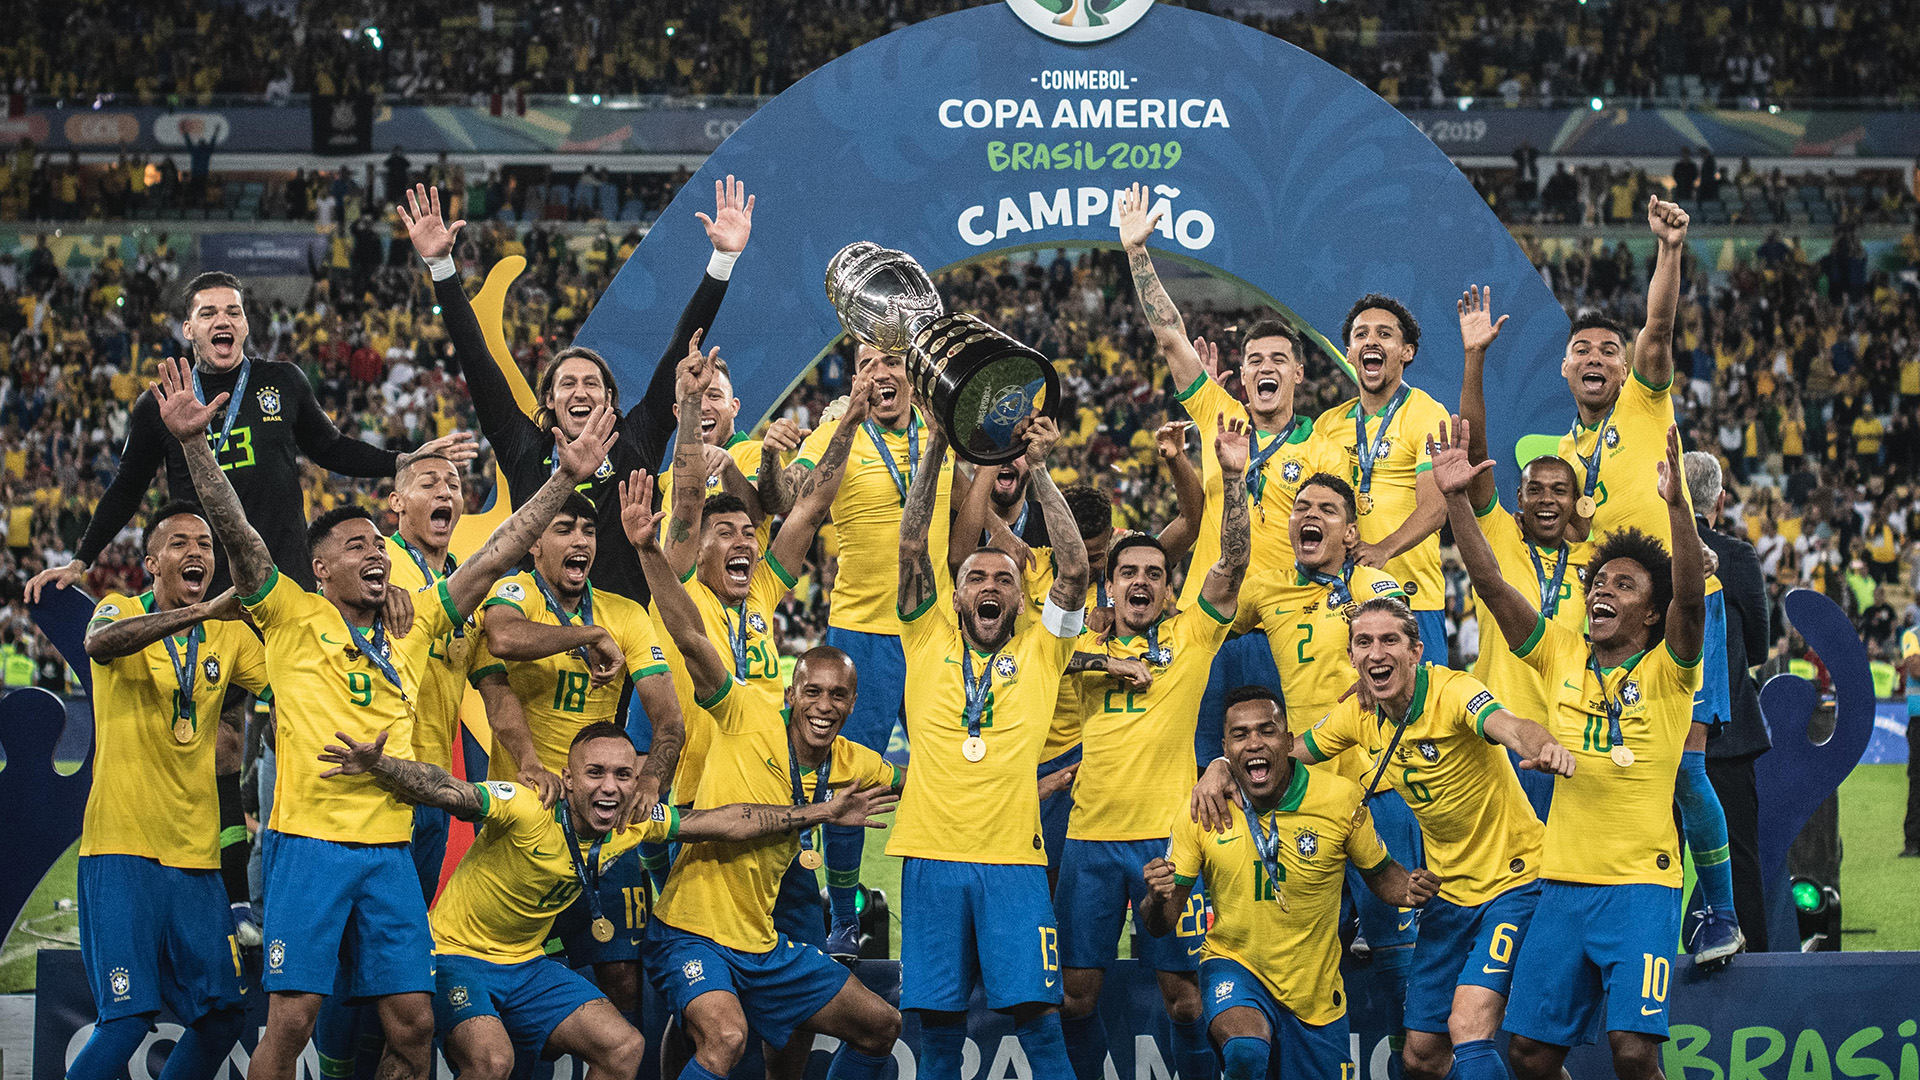 Daftar Juara Copa America, Brasil Bukan Lah Yang Tersukses